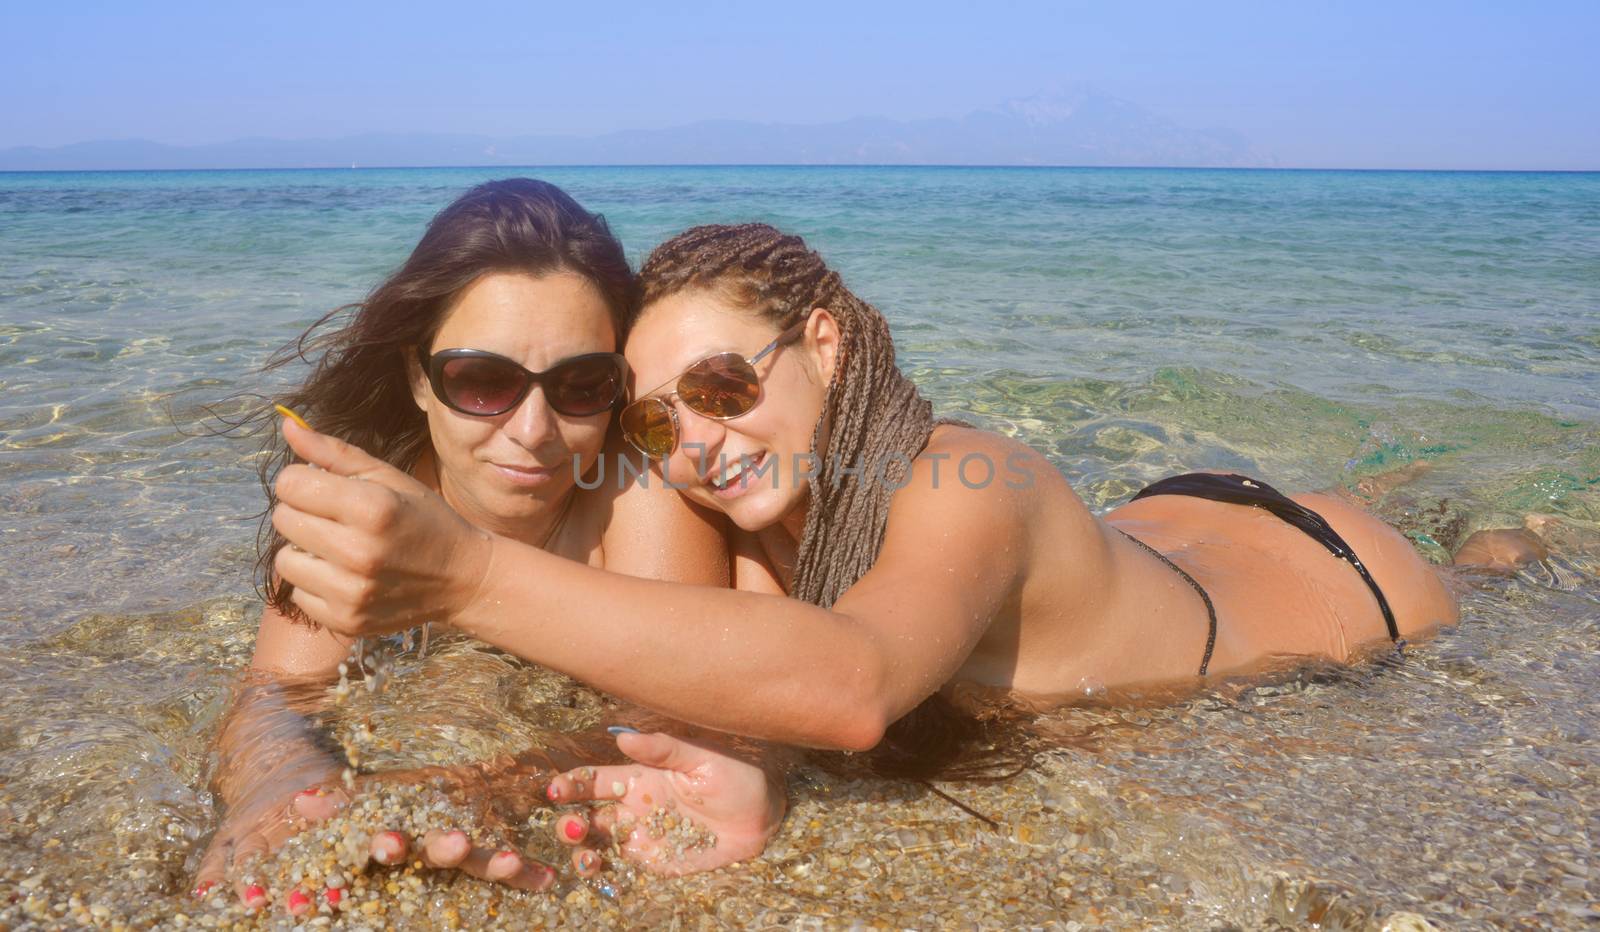 Two Beautiful Women Water Seashore by vilevi